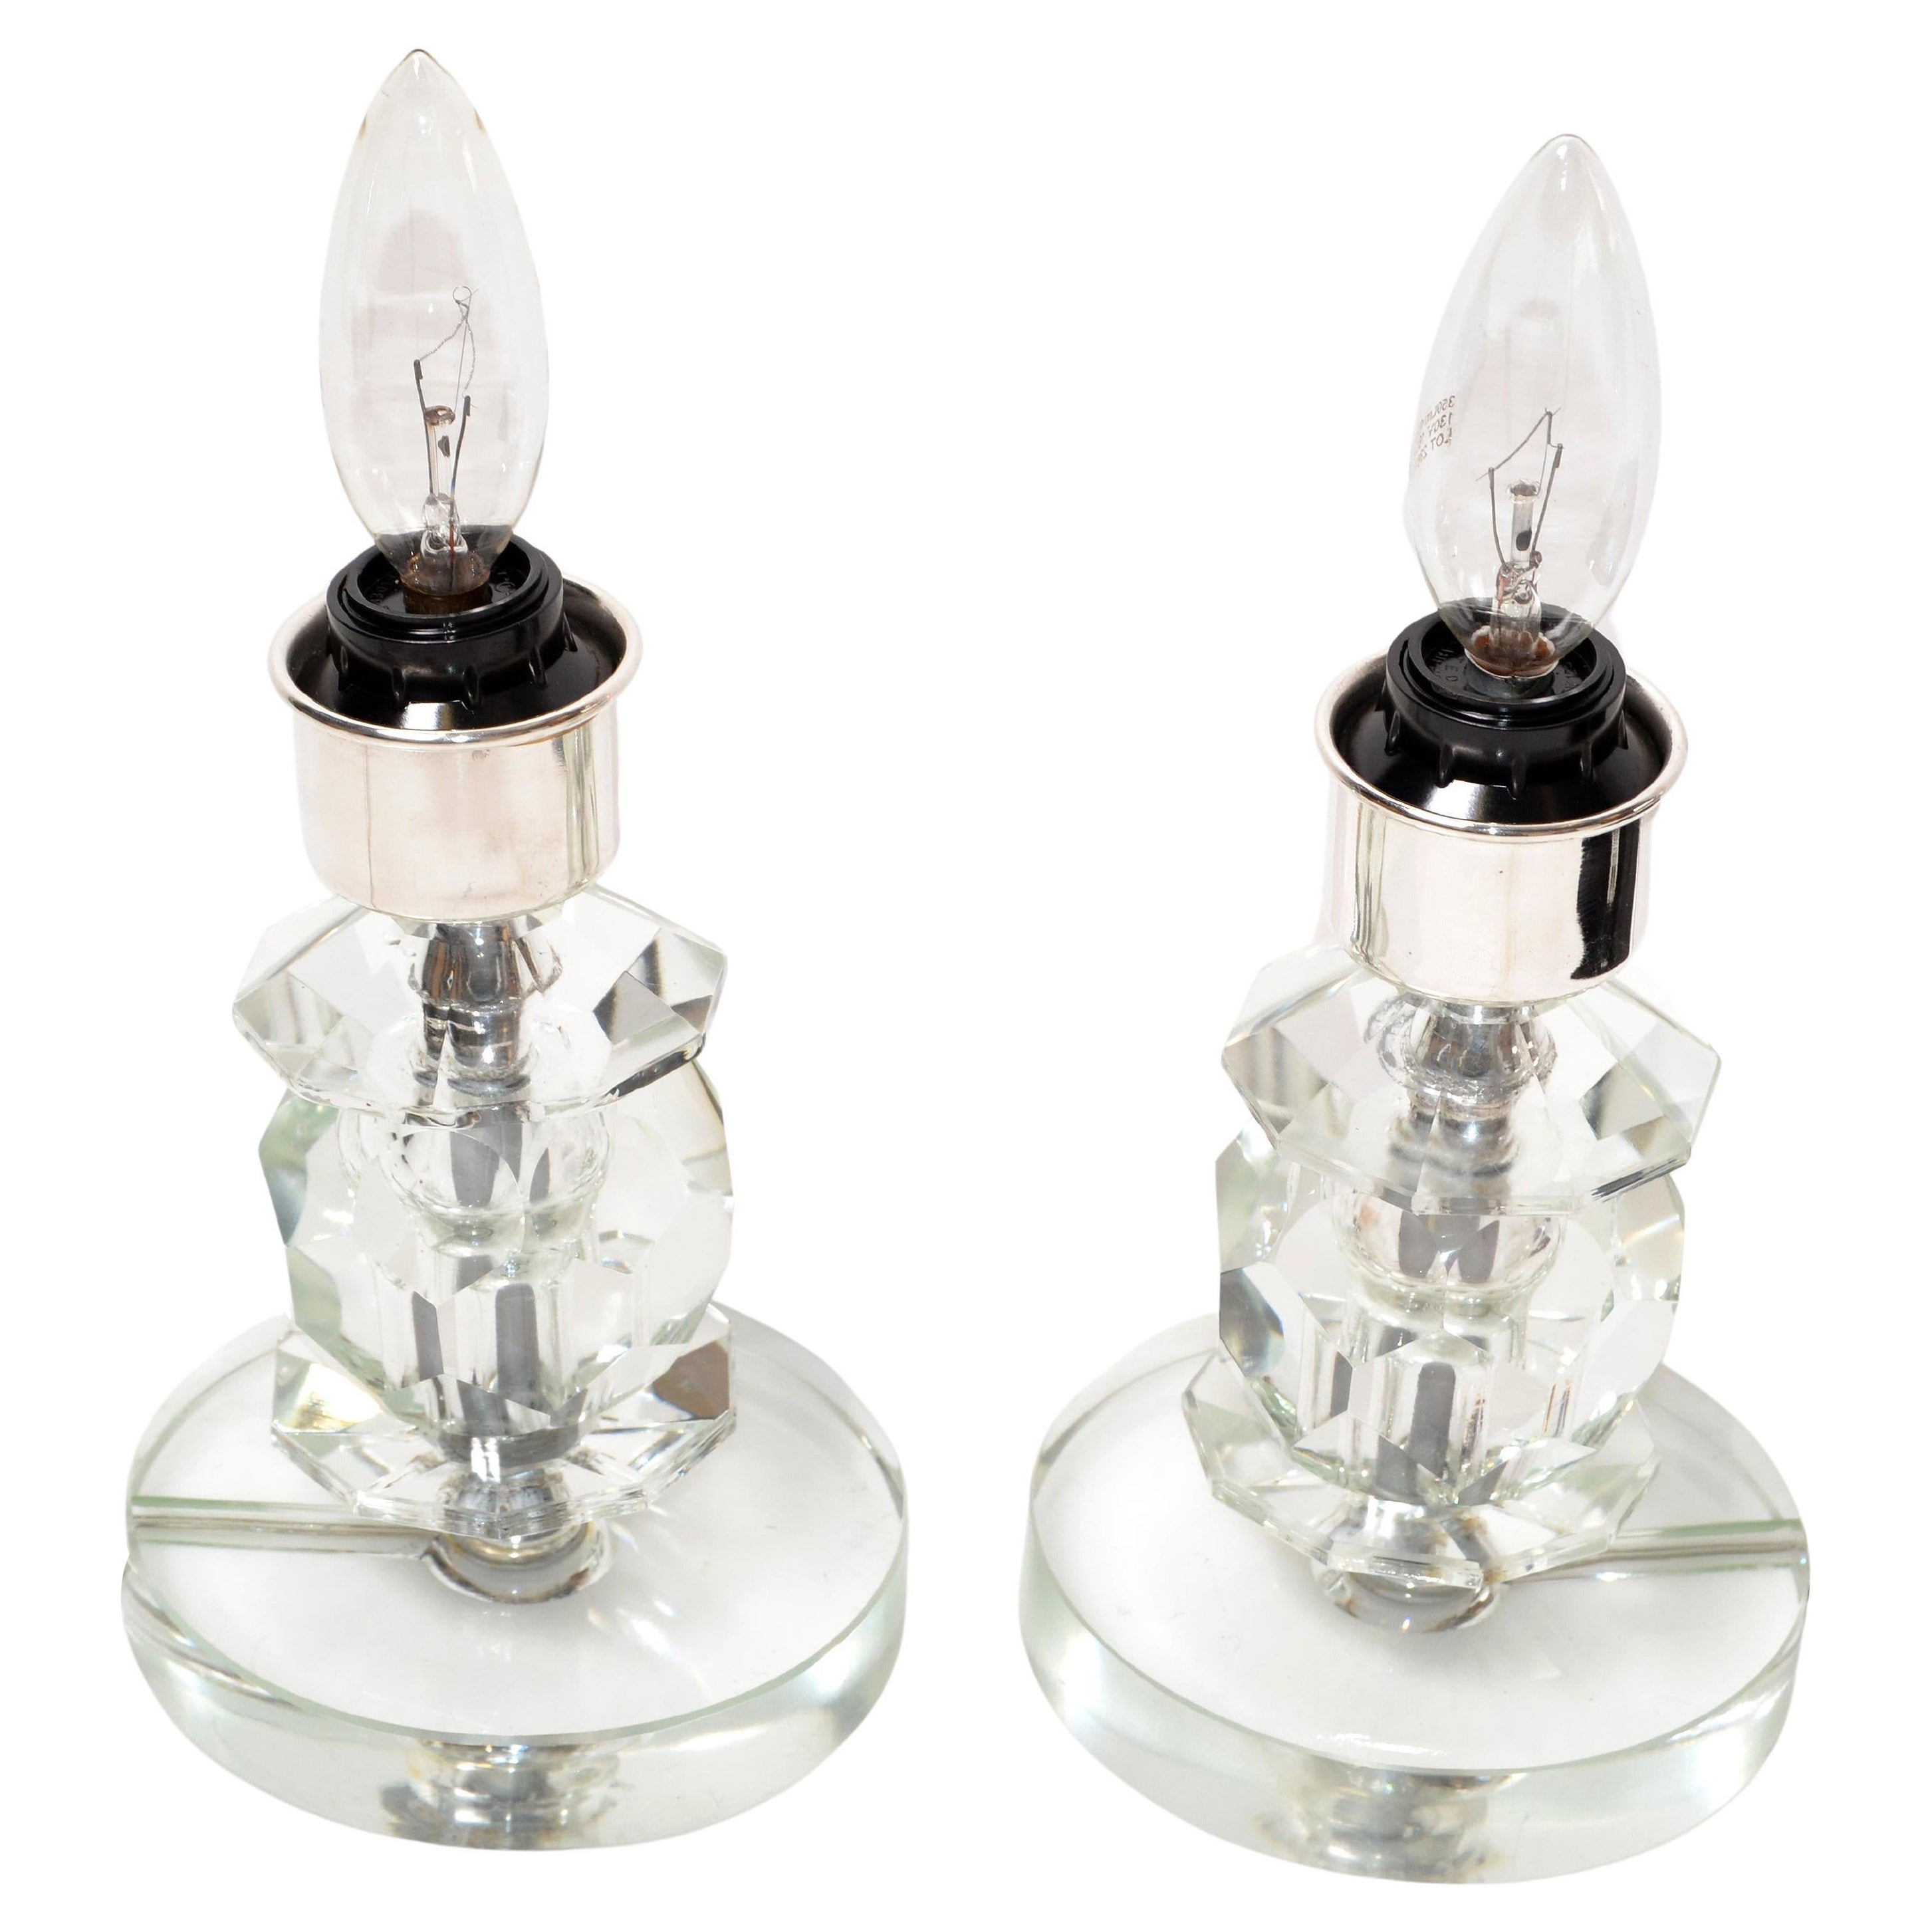 Gestapelte Tischlampen aus Kristallglas und Chrom, ein Paar